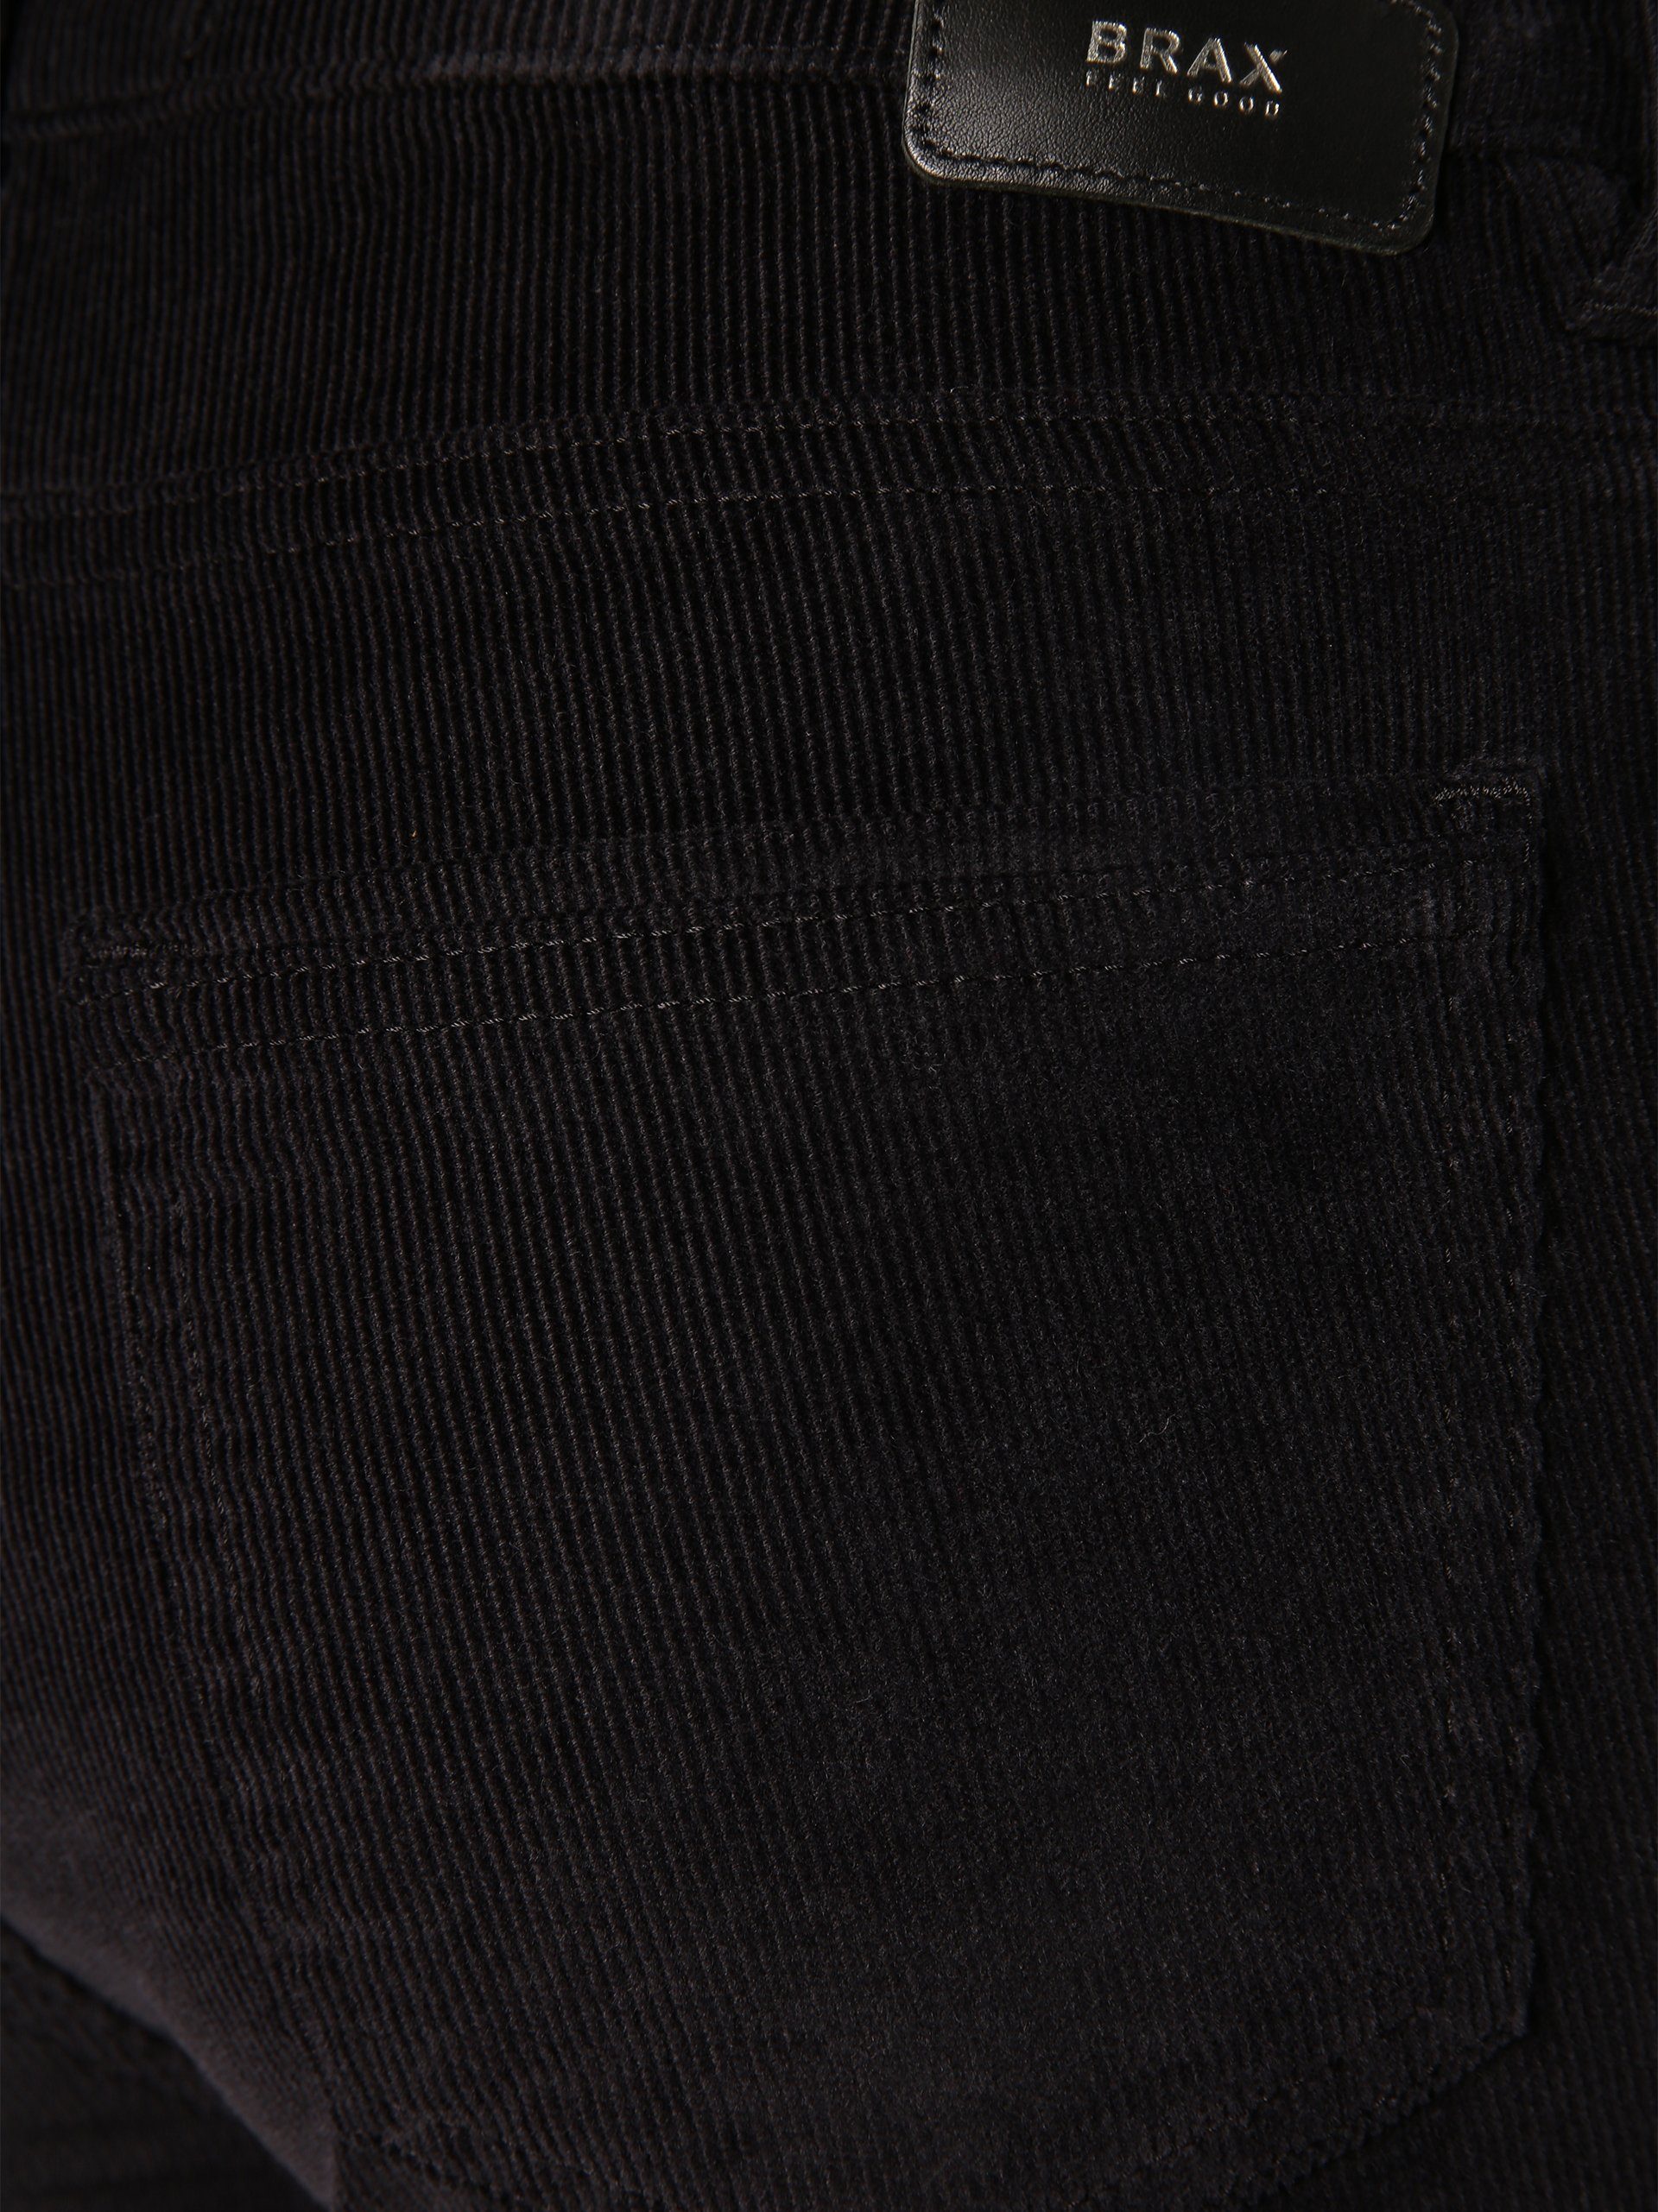 Brax 5-Pocket-Hose Shakira schwarz